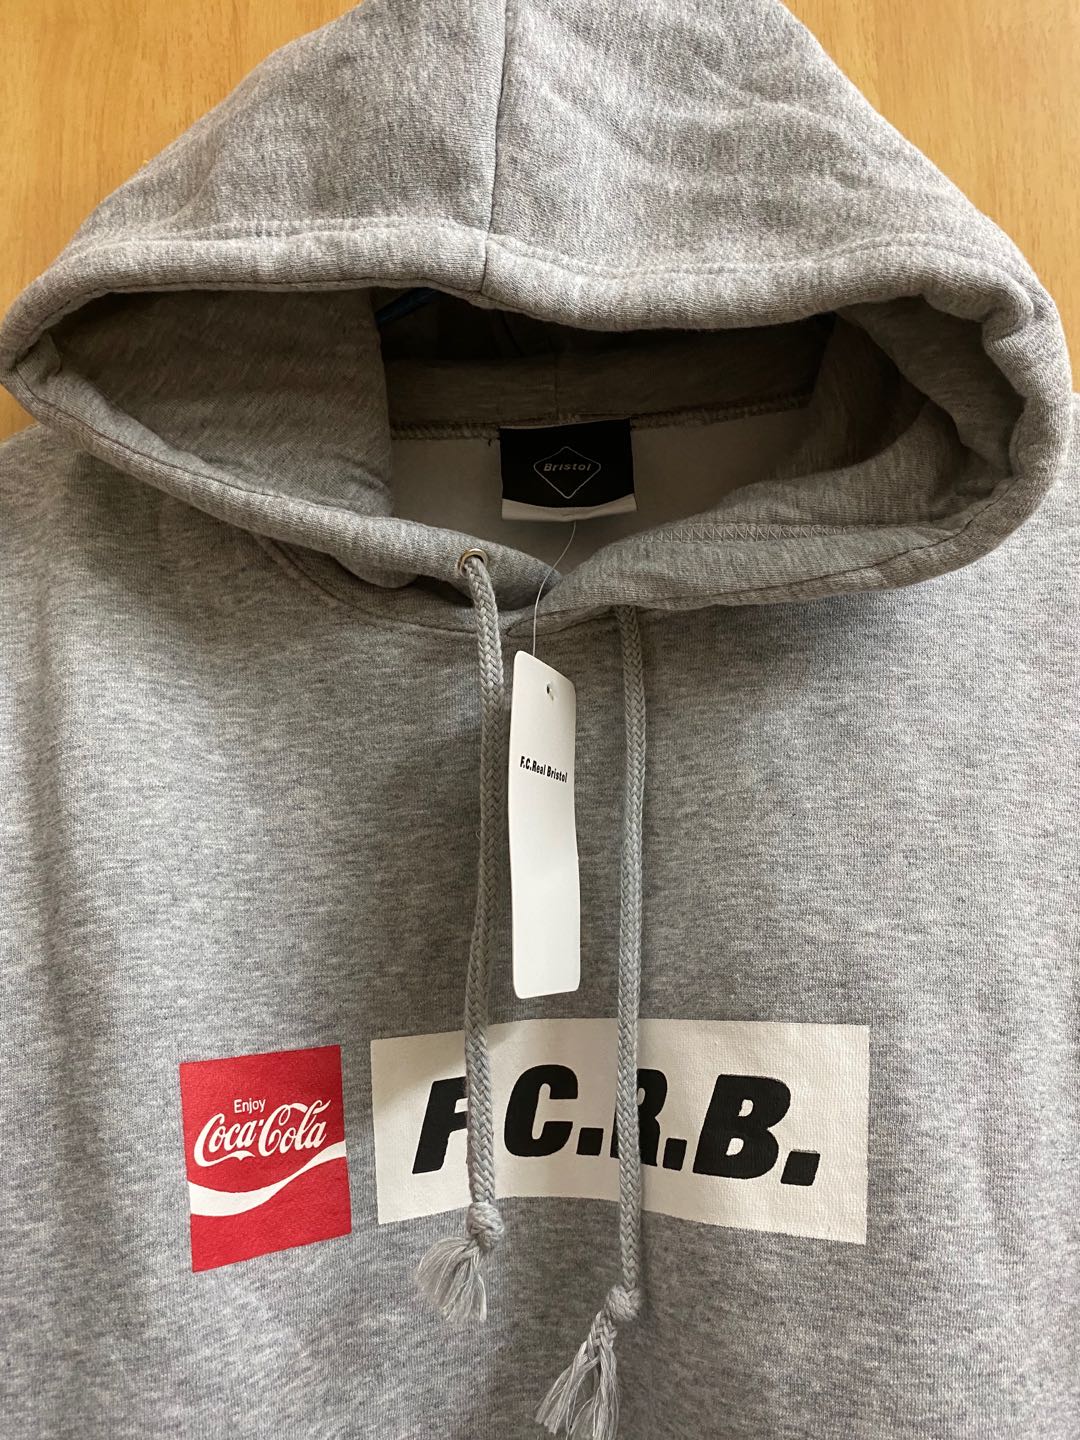 FCRB M : メンズファッション COCACOLA パーカー お得限定品